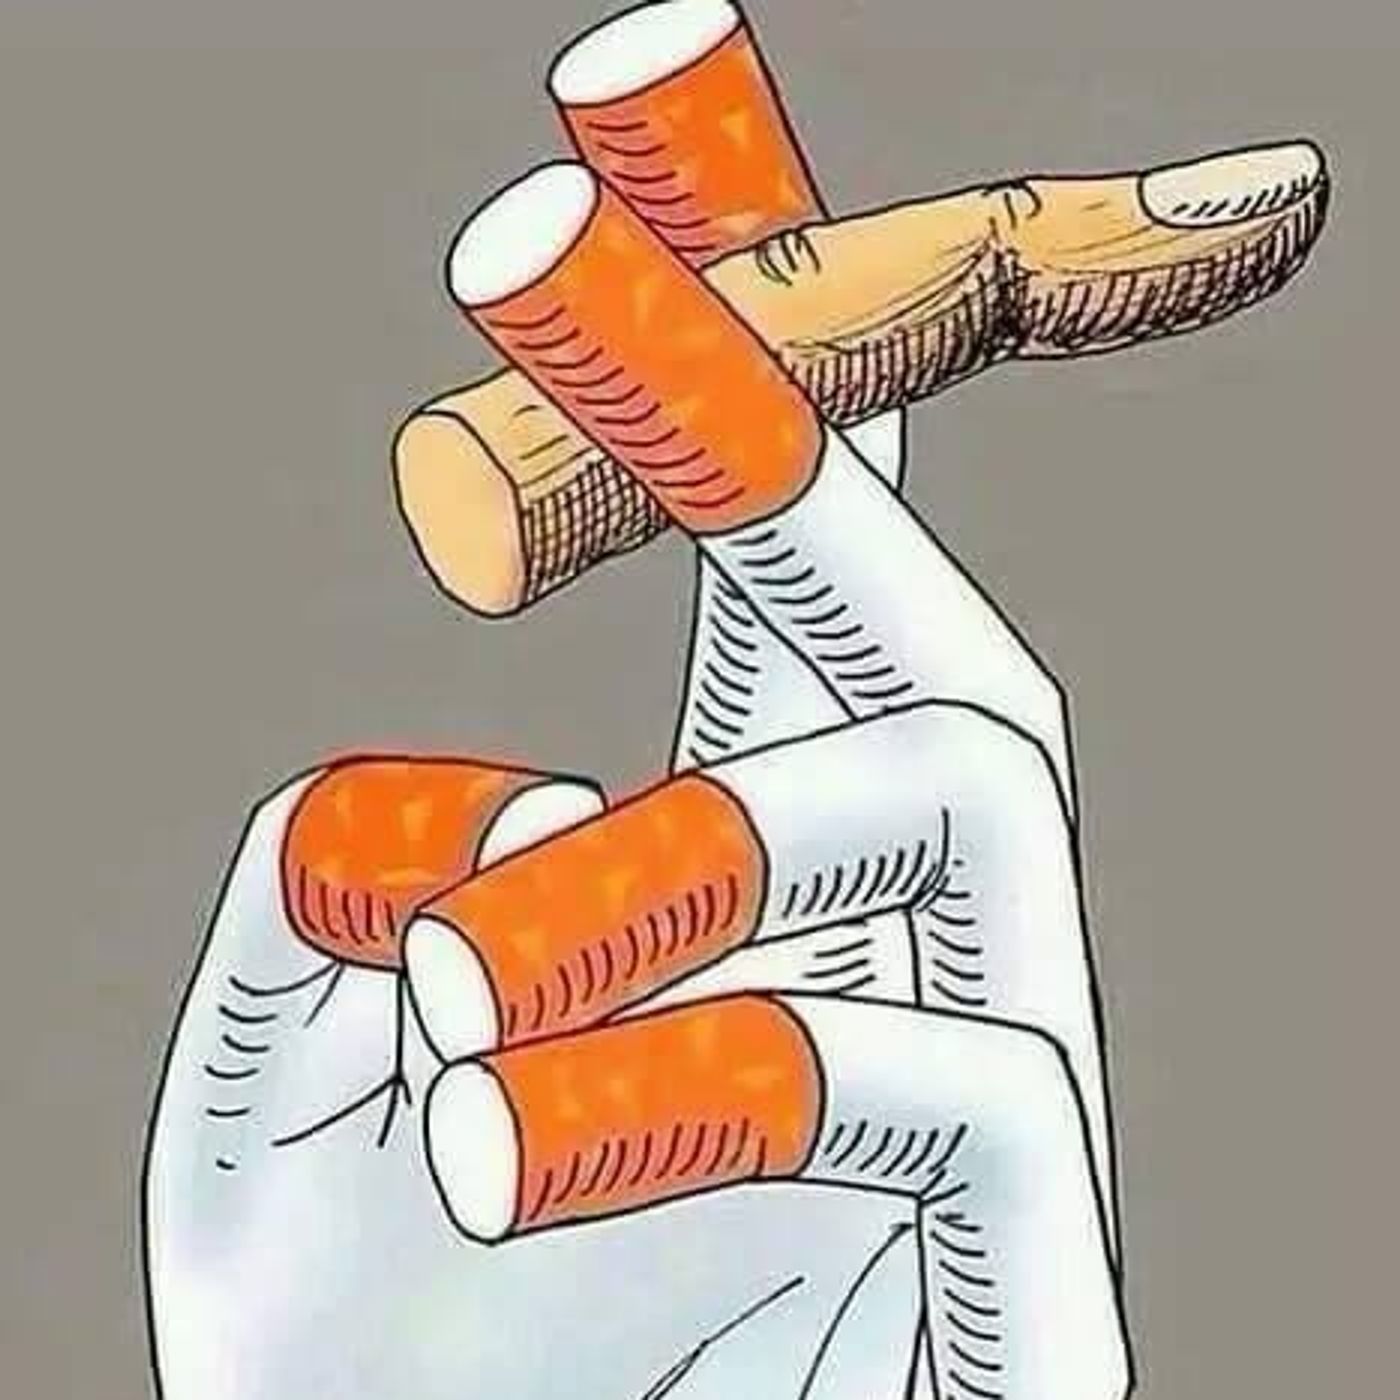 Come il fumo inganna le persone